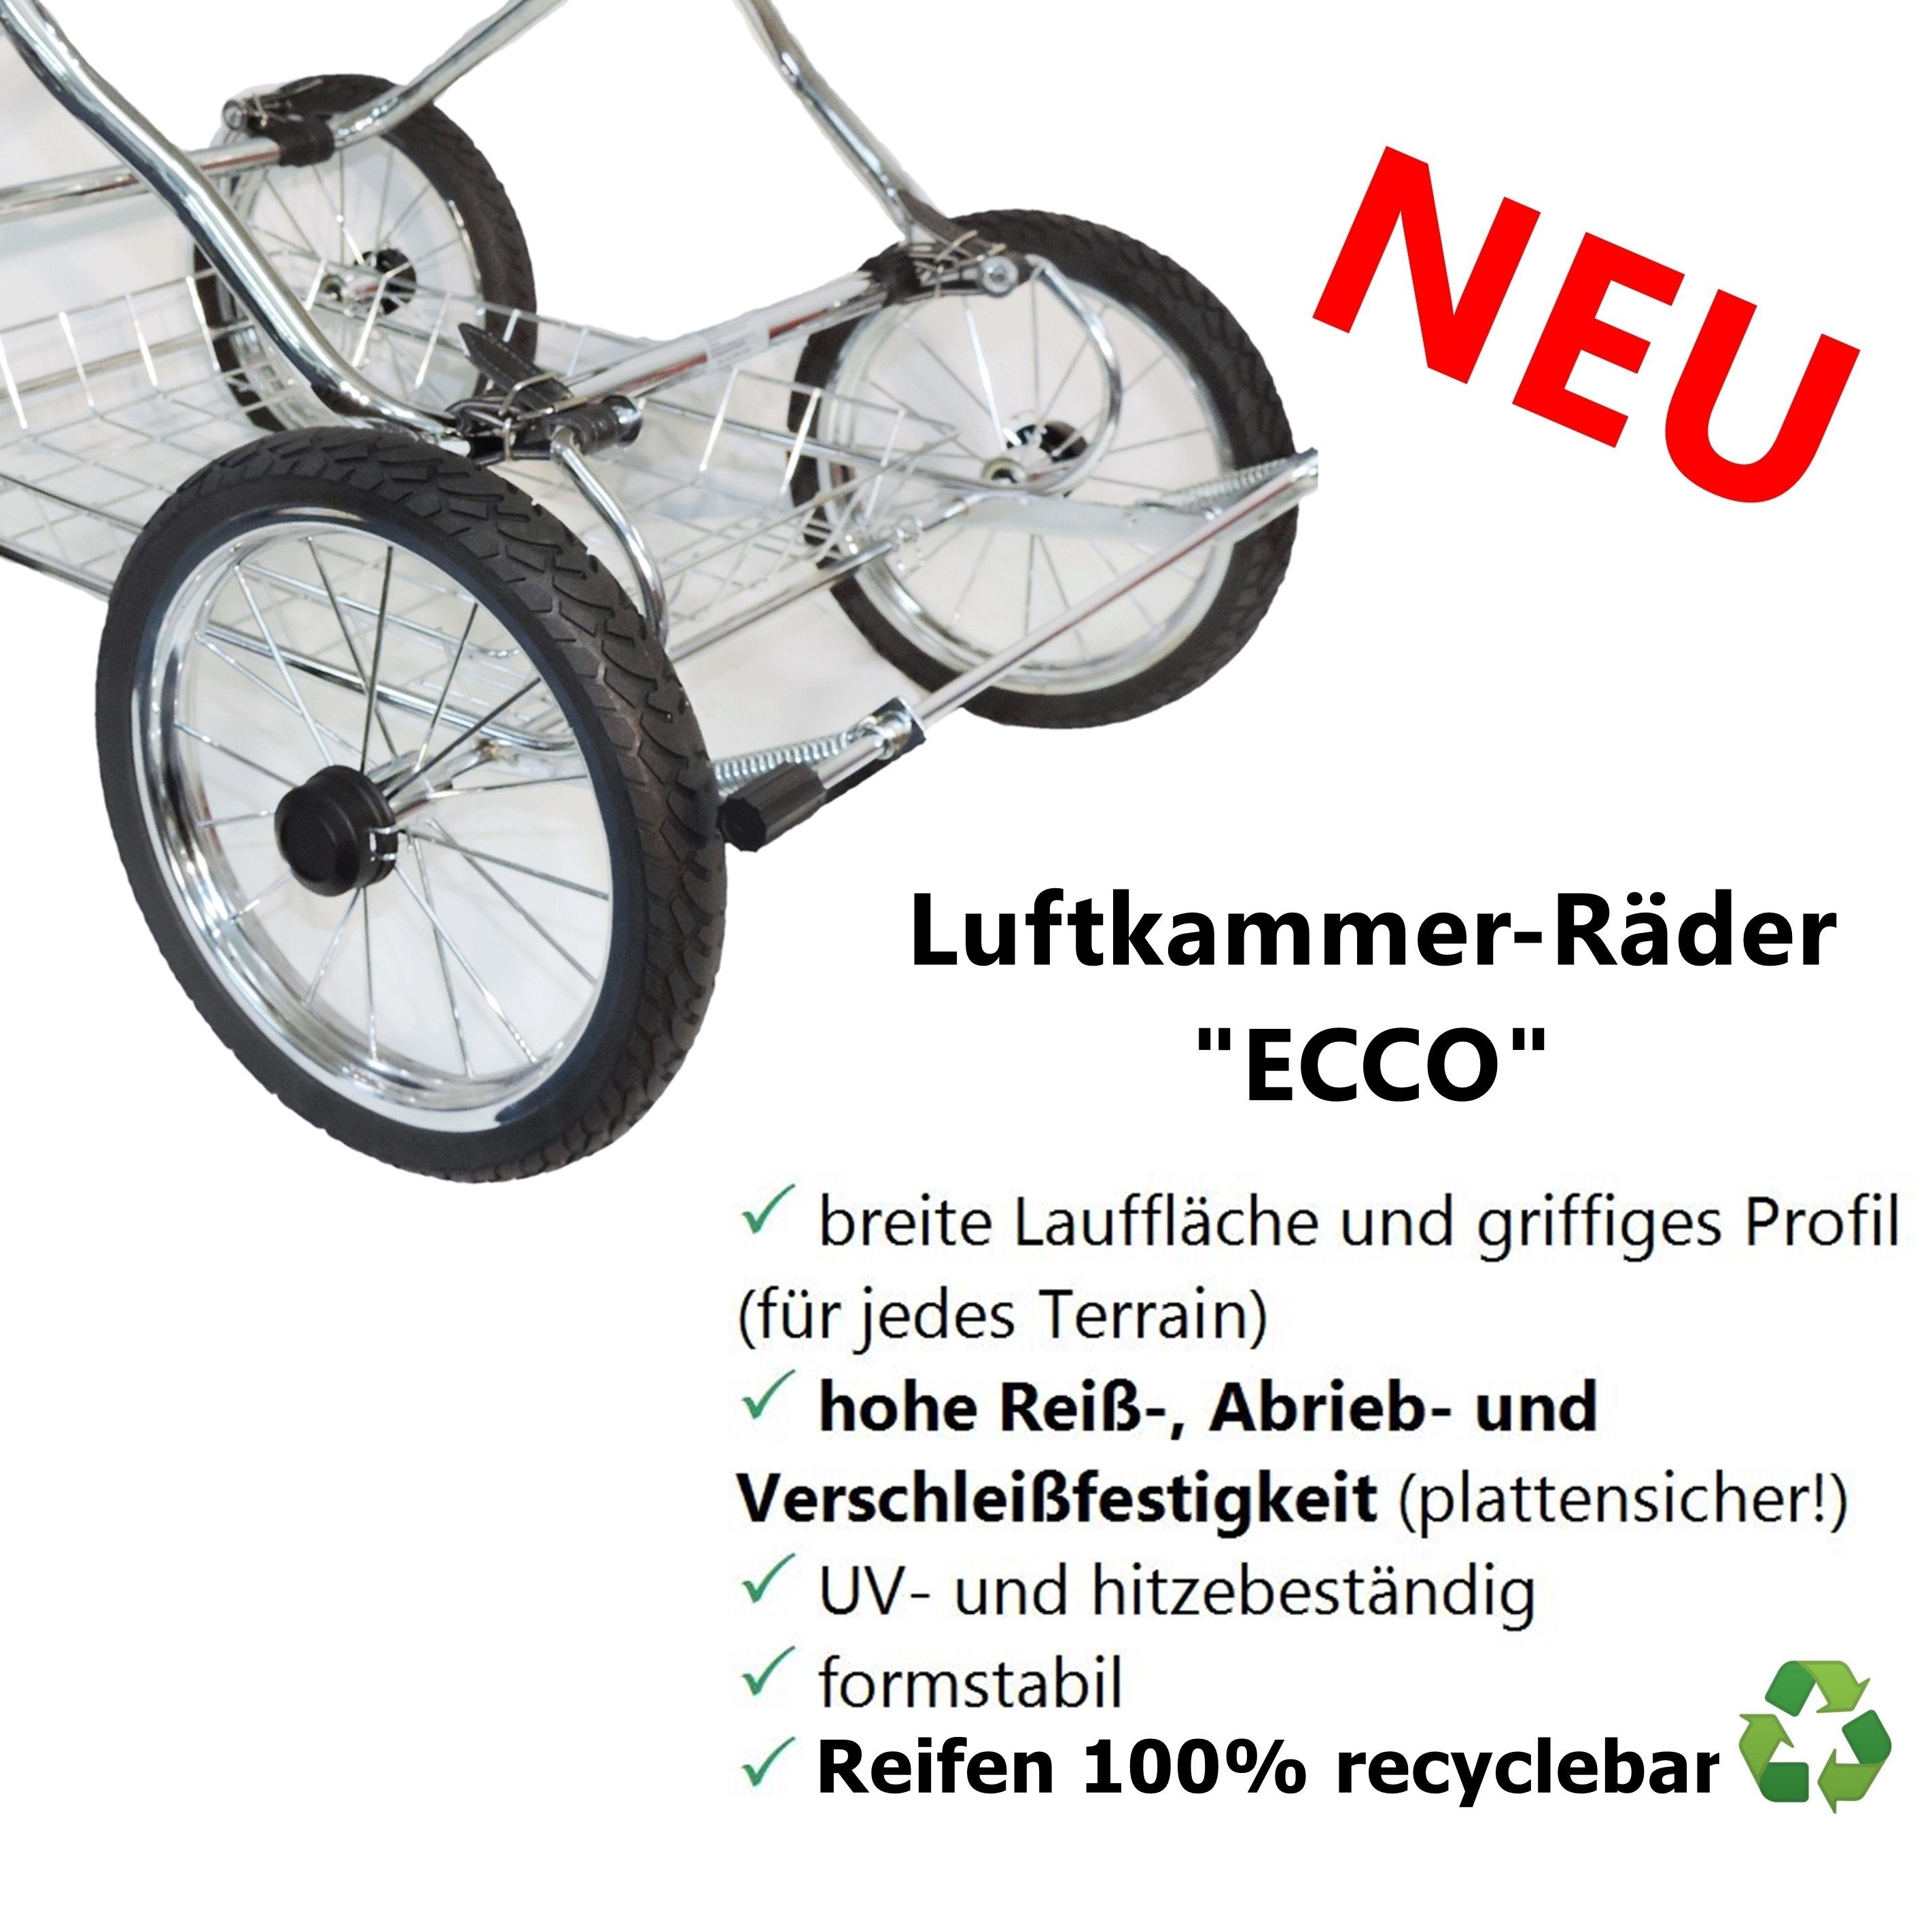 Eichhorn Kinderwagen Sport-Kinderwagen - EU Designer-ECO, in recyclebarer Luftkammerbereifung alle Komponenten marine made mit